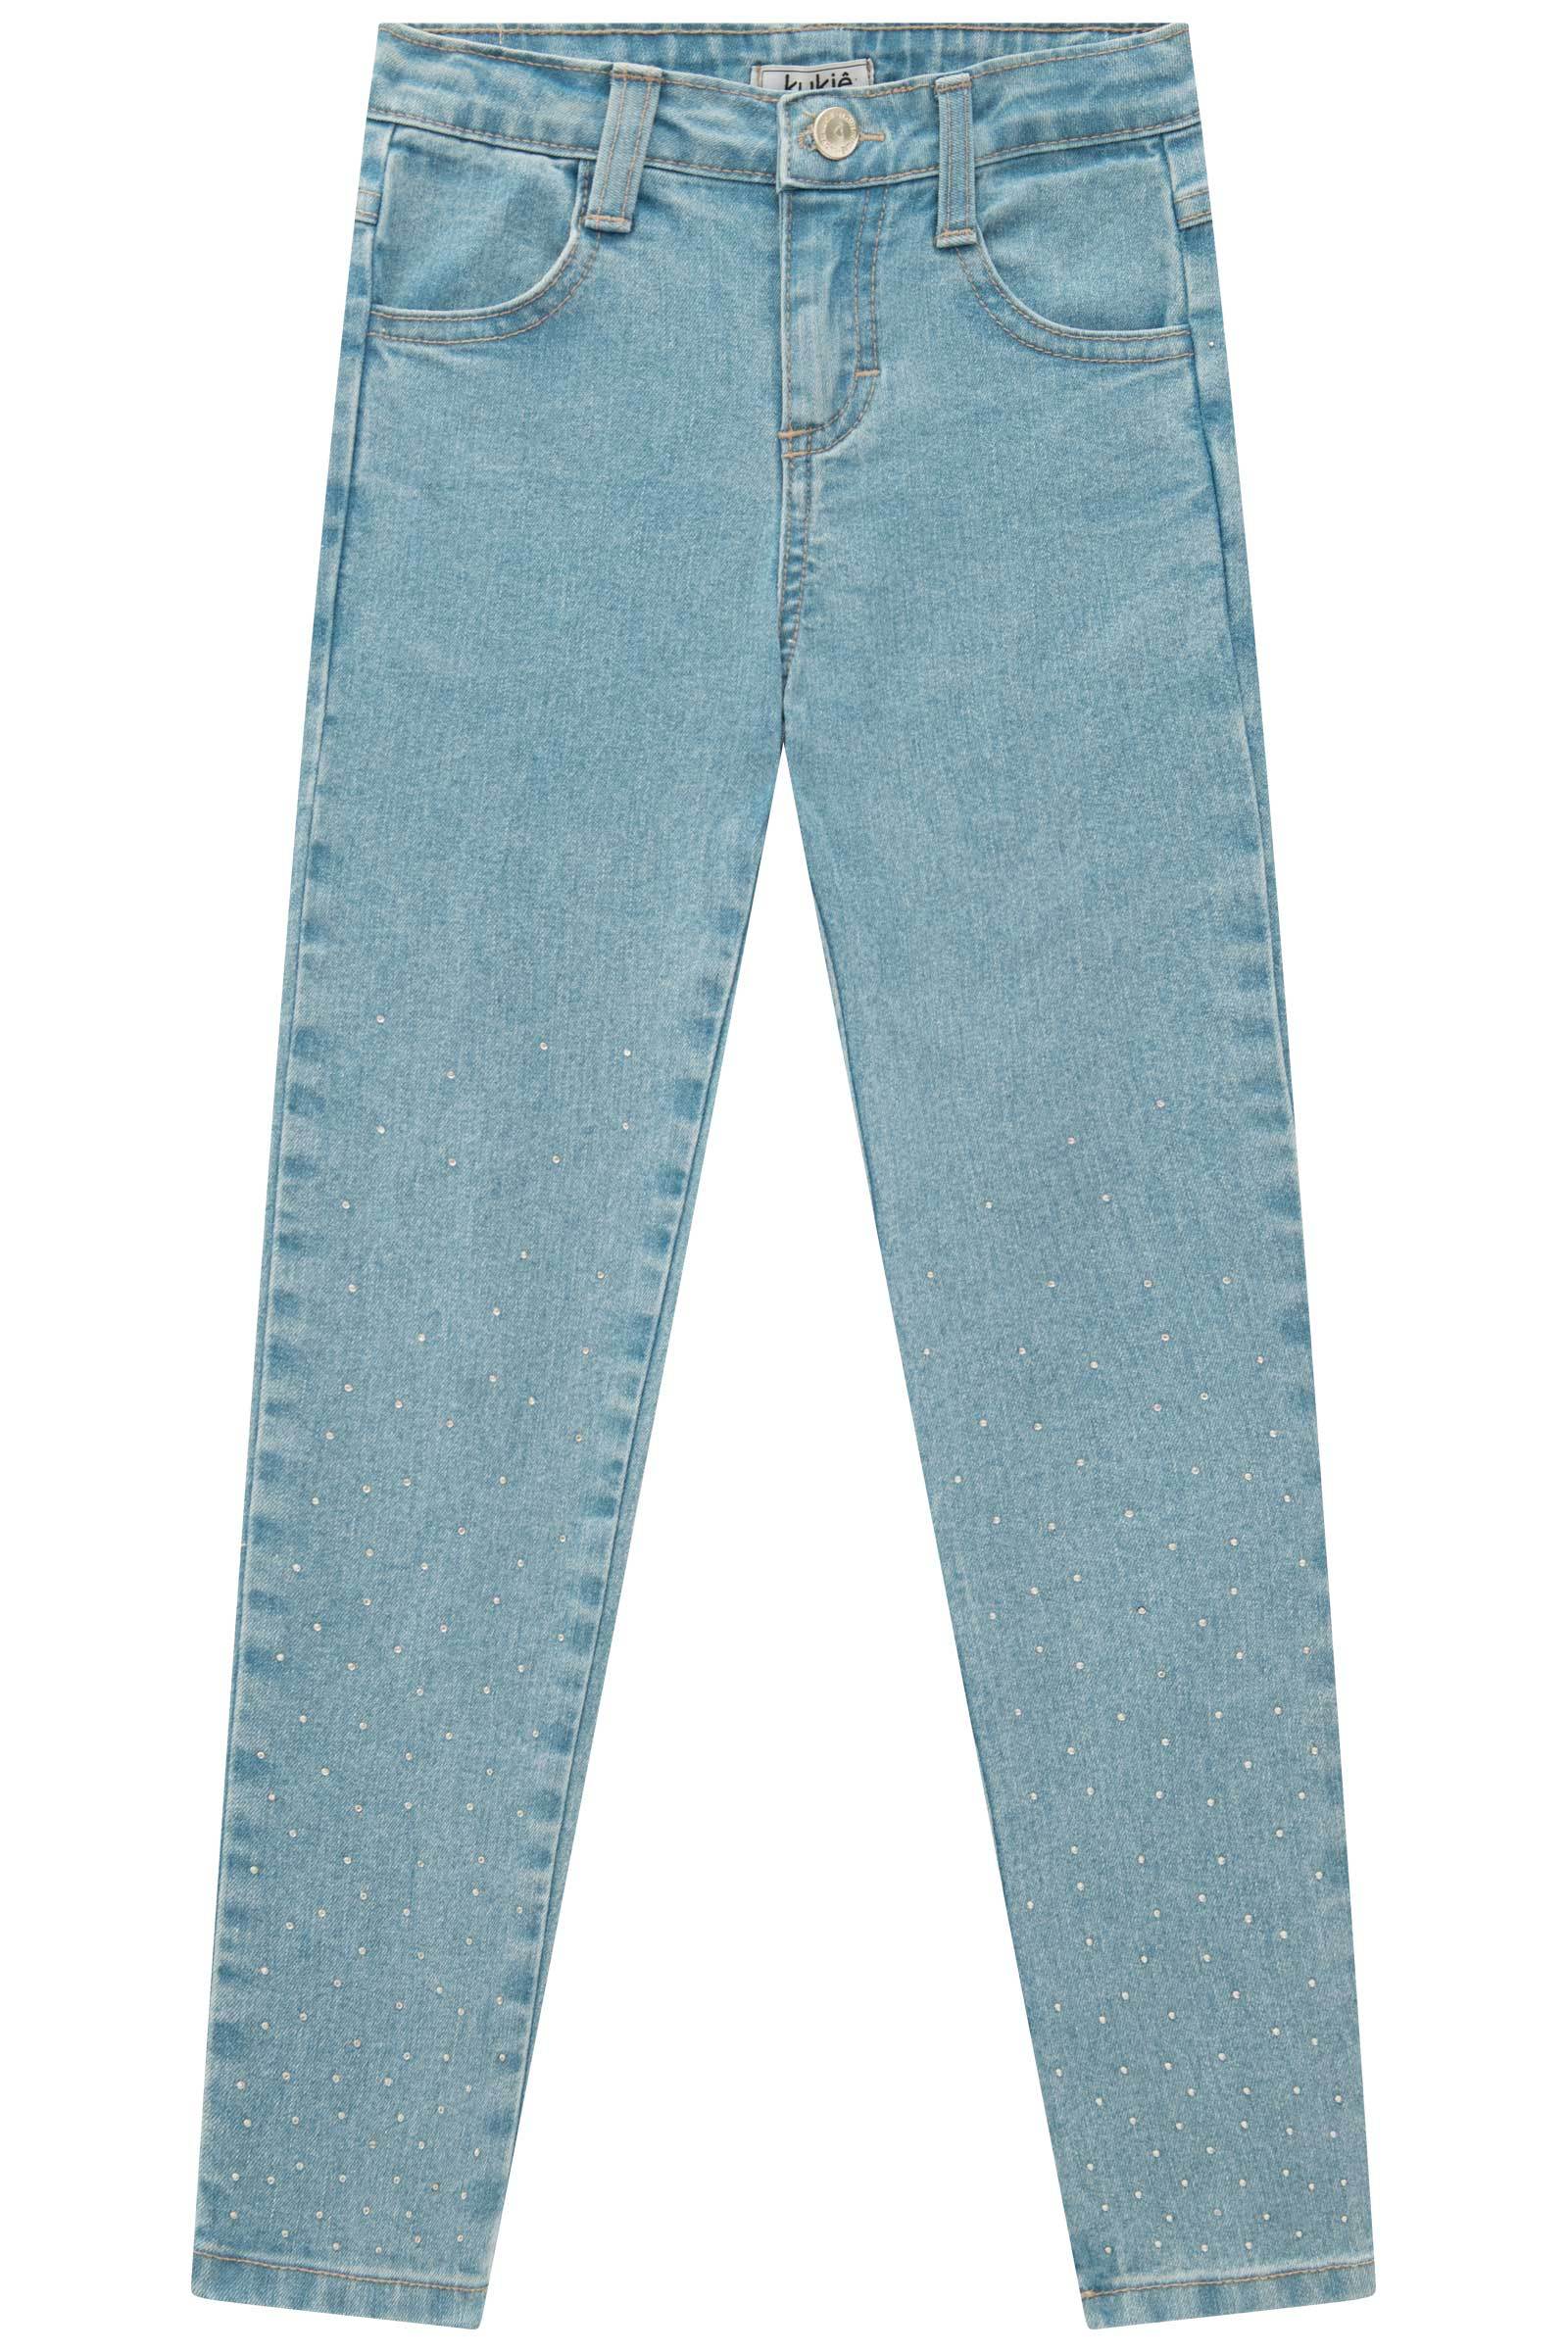 Calça Skinny em Jeans com Elastano 70989 Kukiê